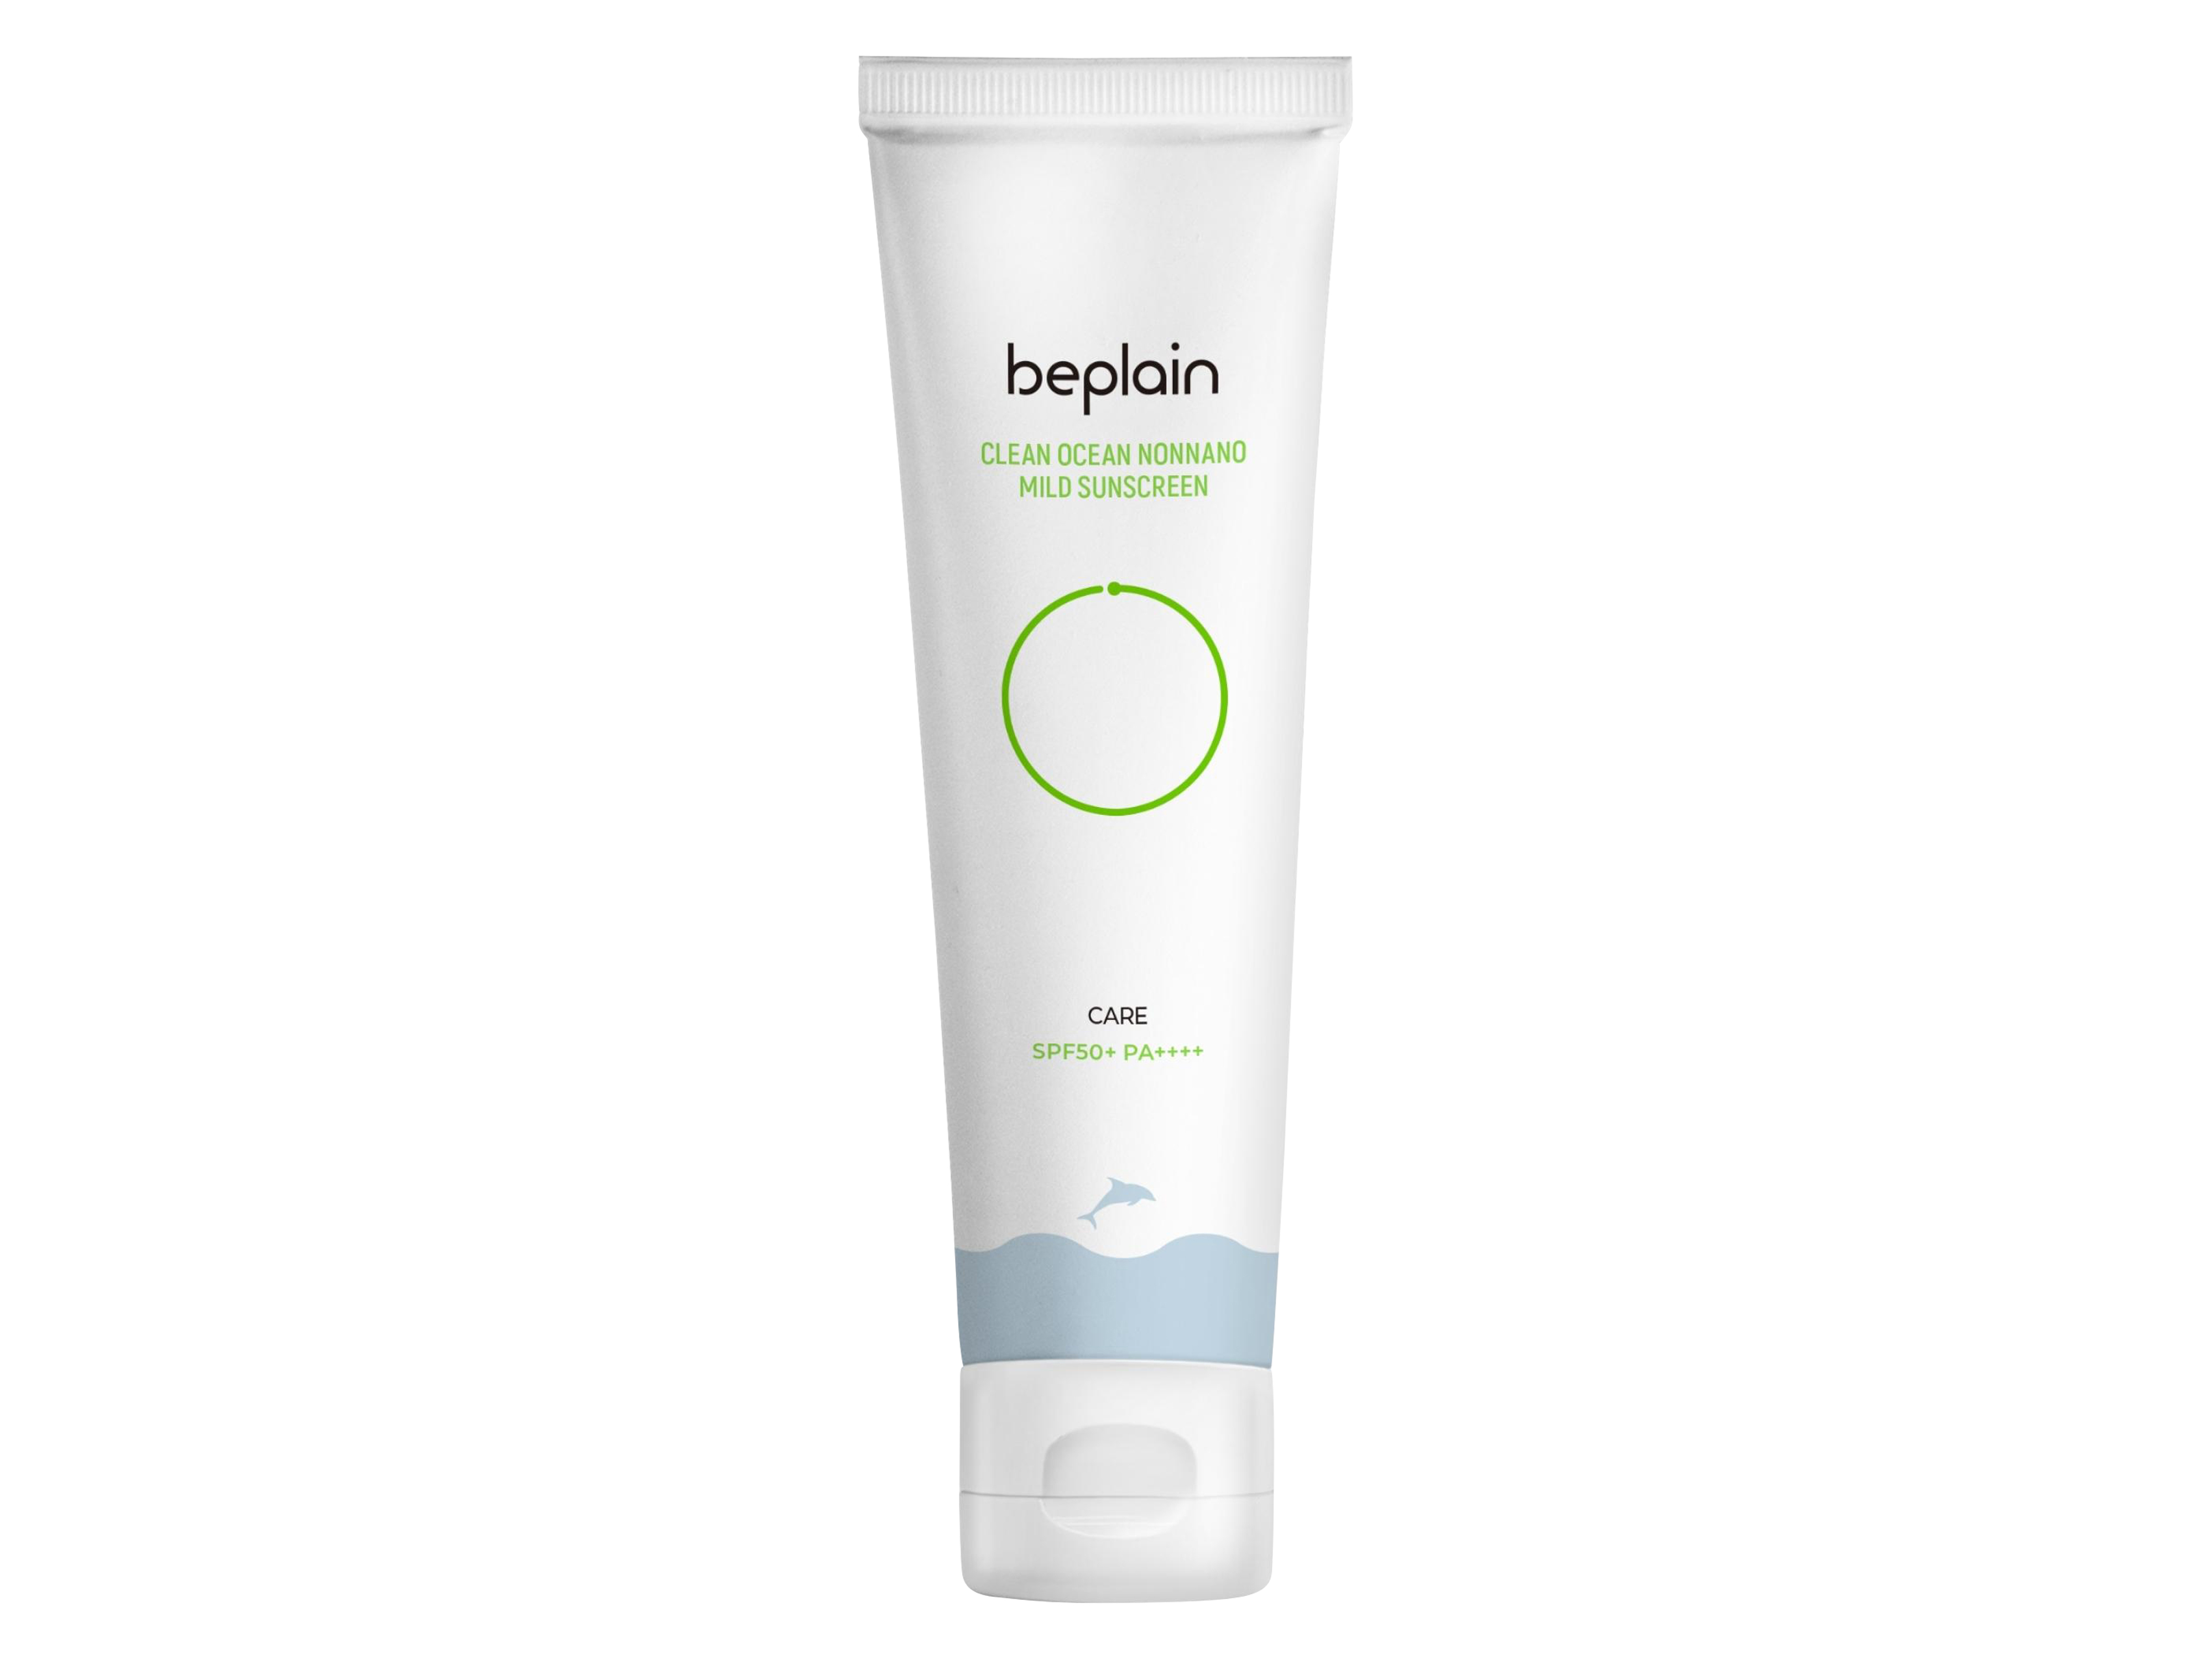 Beplain Clean Ocean Nonnano Mild Sunscreen, SPF50+ PA+++, 50 ml